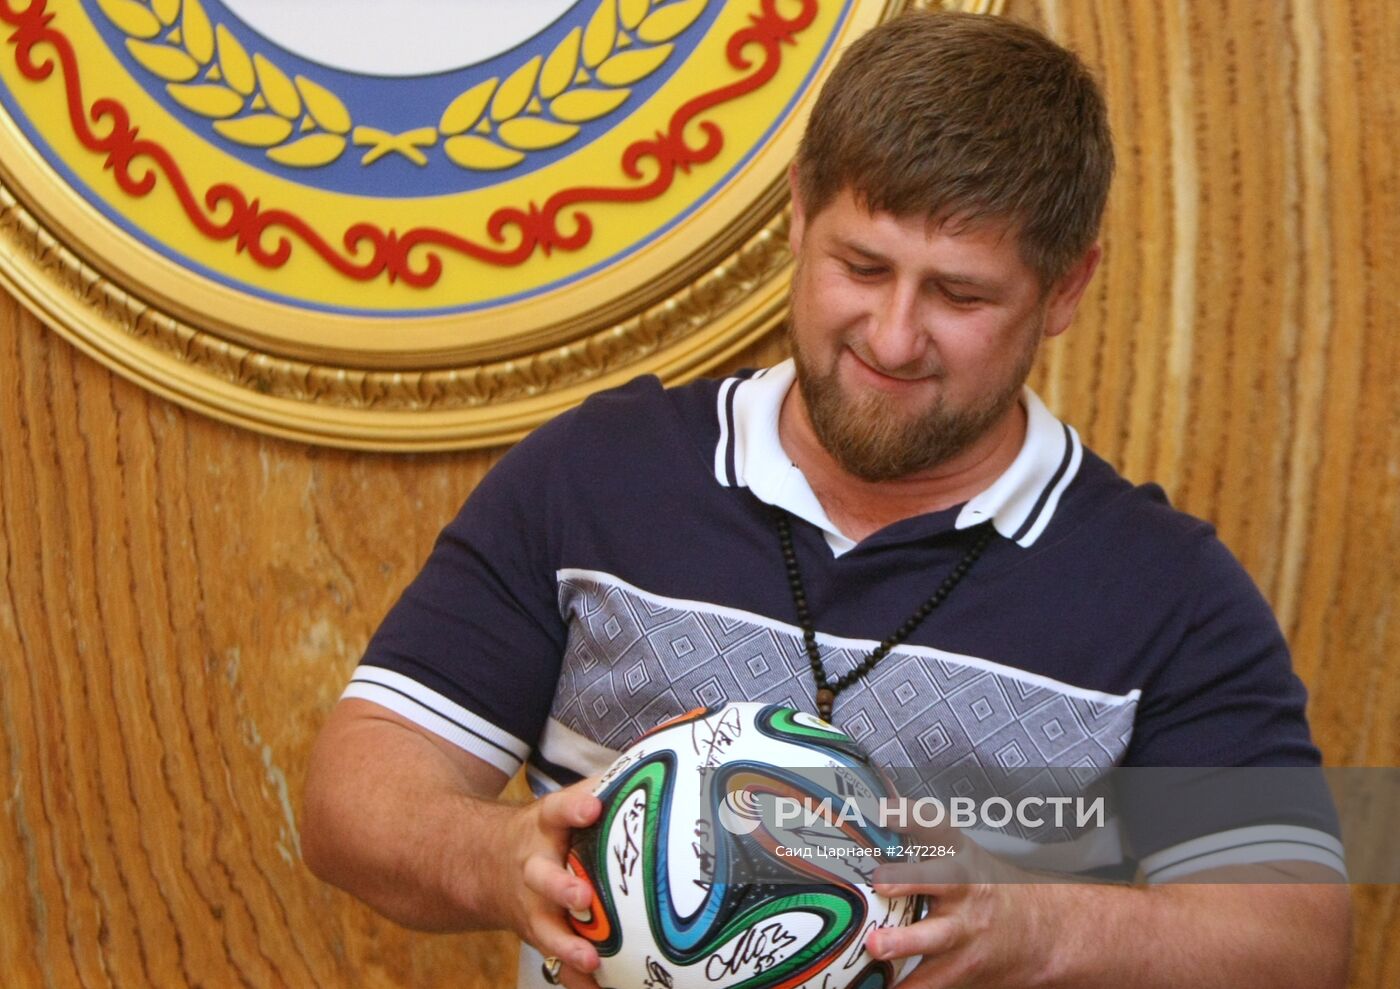 Глава Чечни Р.Кадыров встретился с рководством и игроками РФК "Терек"